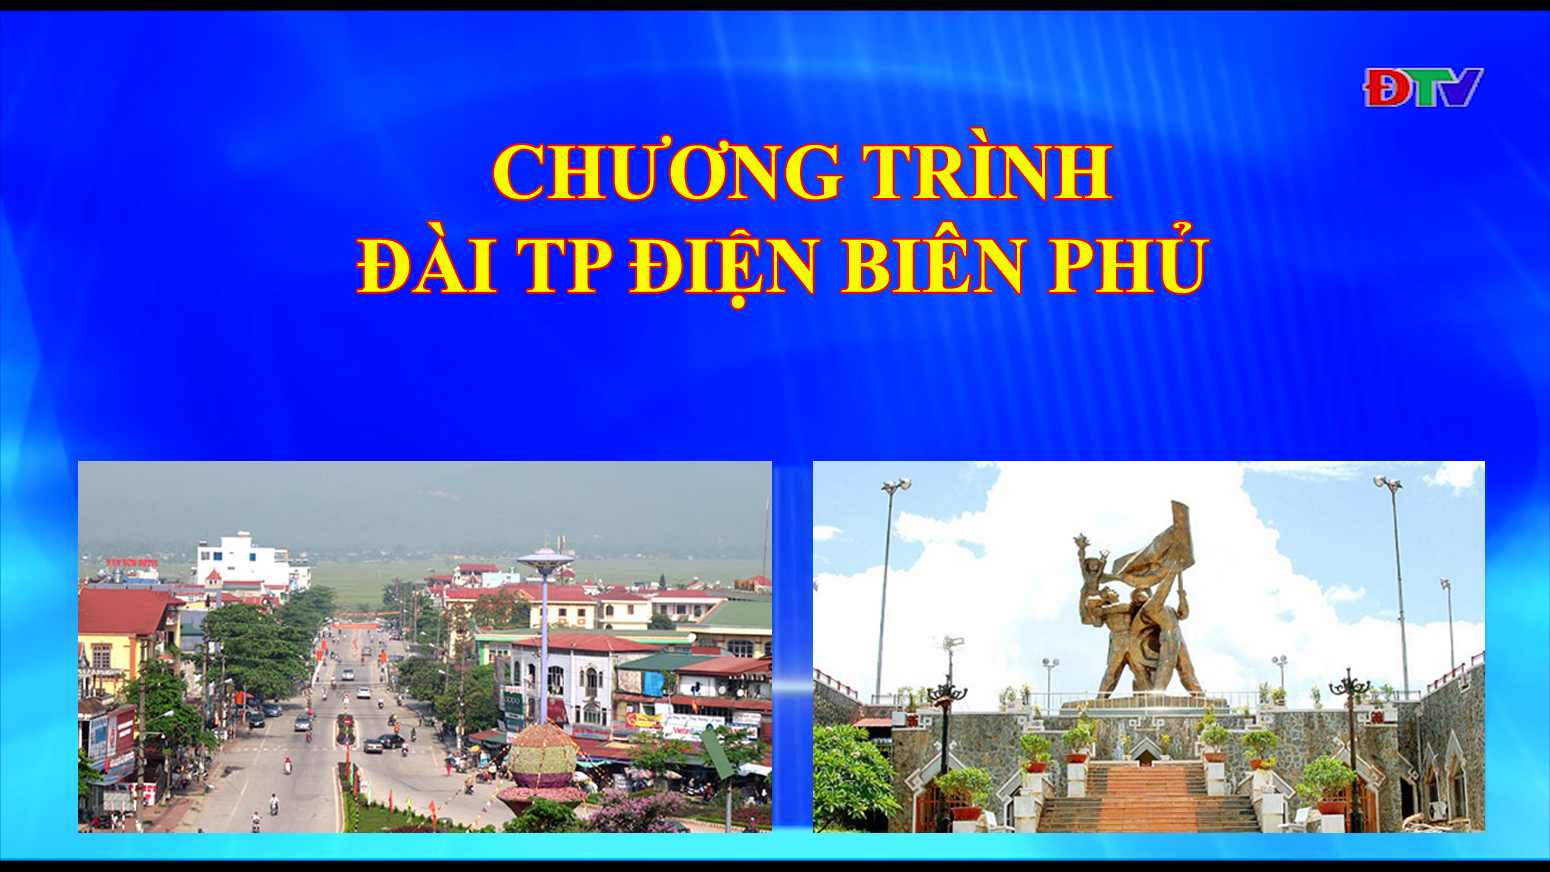 Đài thành phố Điện Biên Phủ (Ngày 31/03/2020)